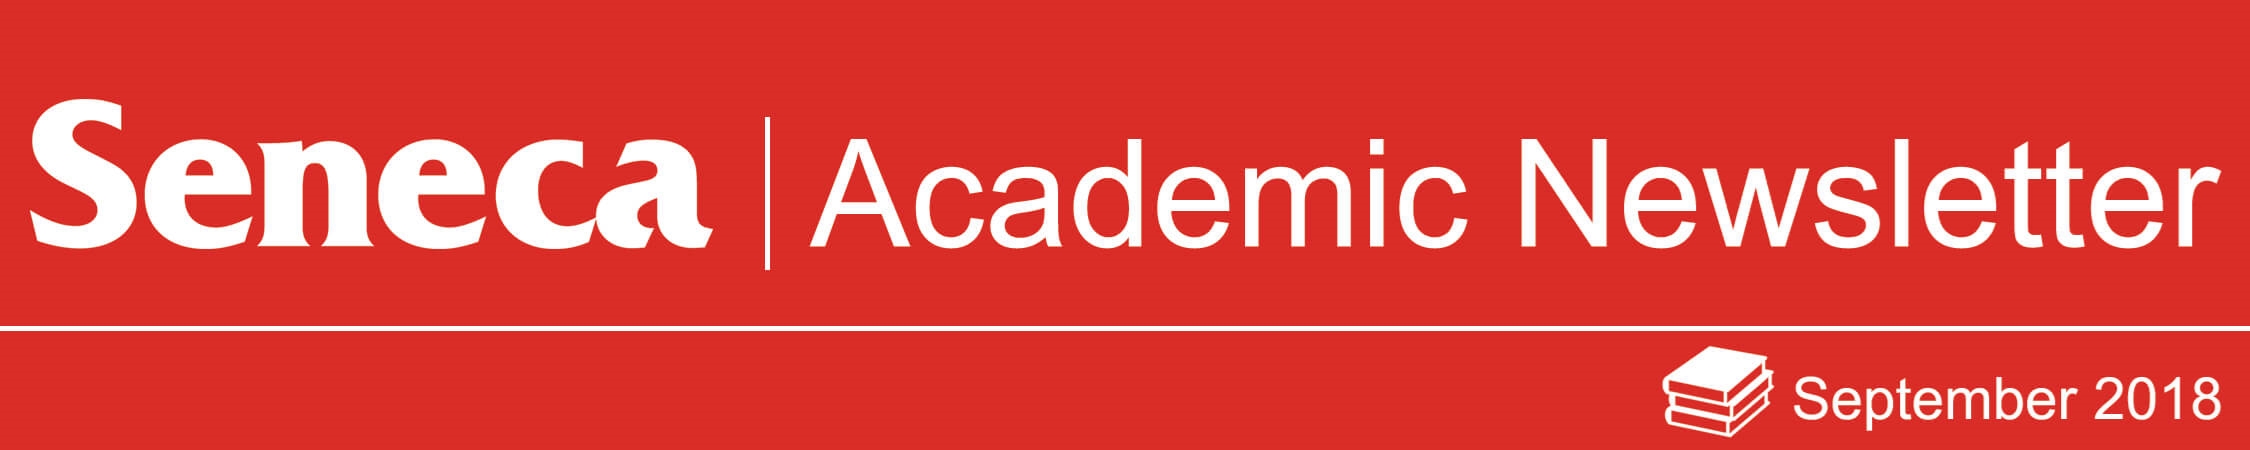 The header logo for the September 2018 issue of the Academic Newsletter